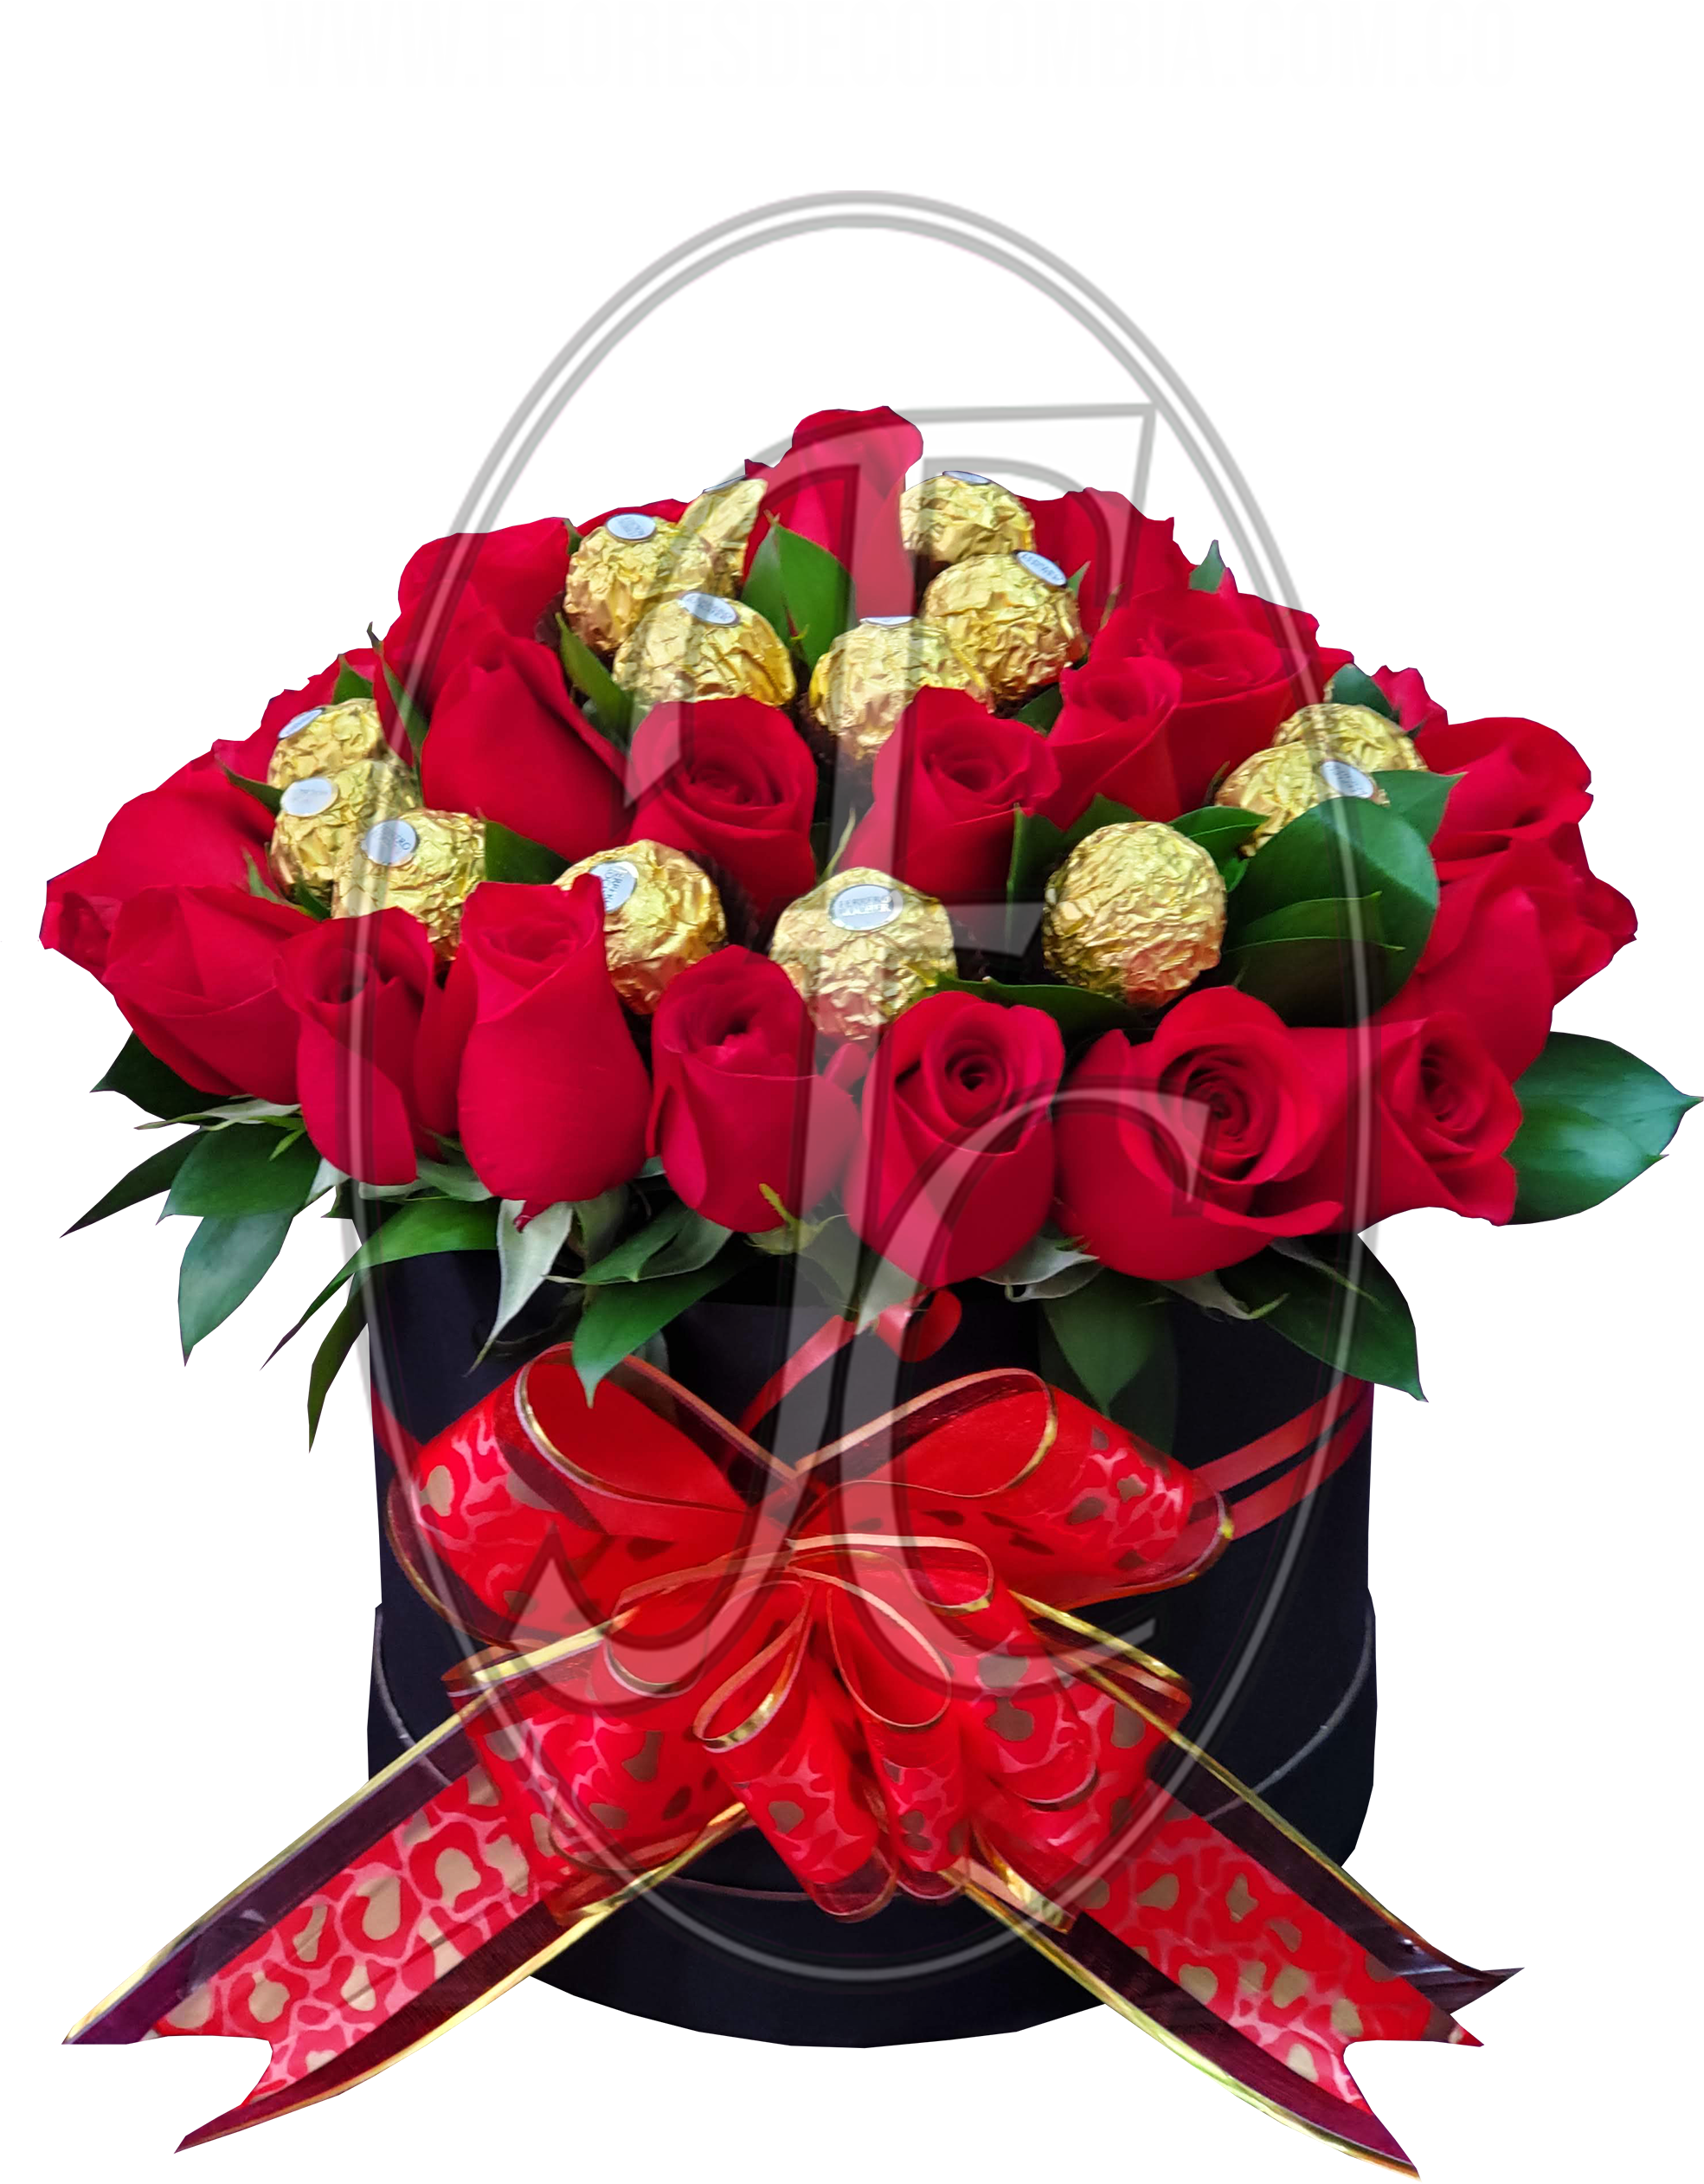 Caja regalo con 25 rosas y chocolates │ Flores de Colombia